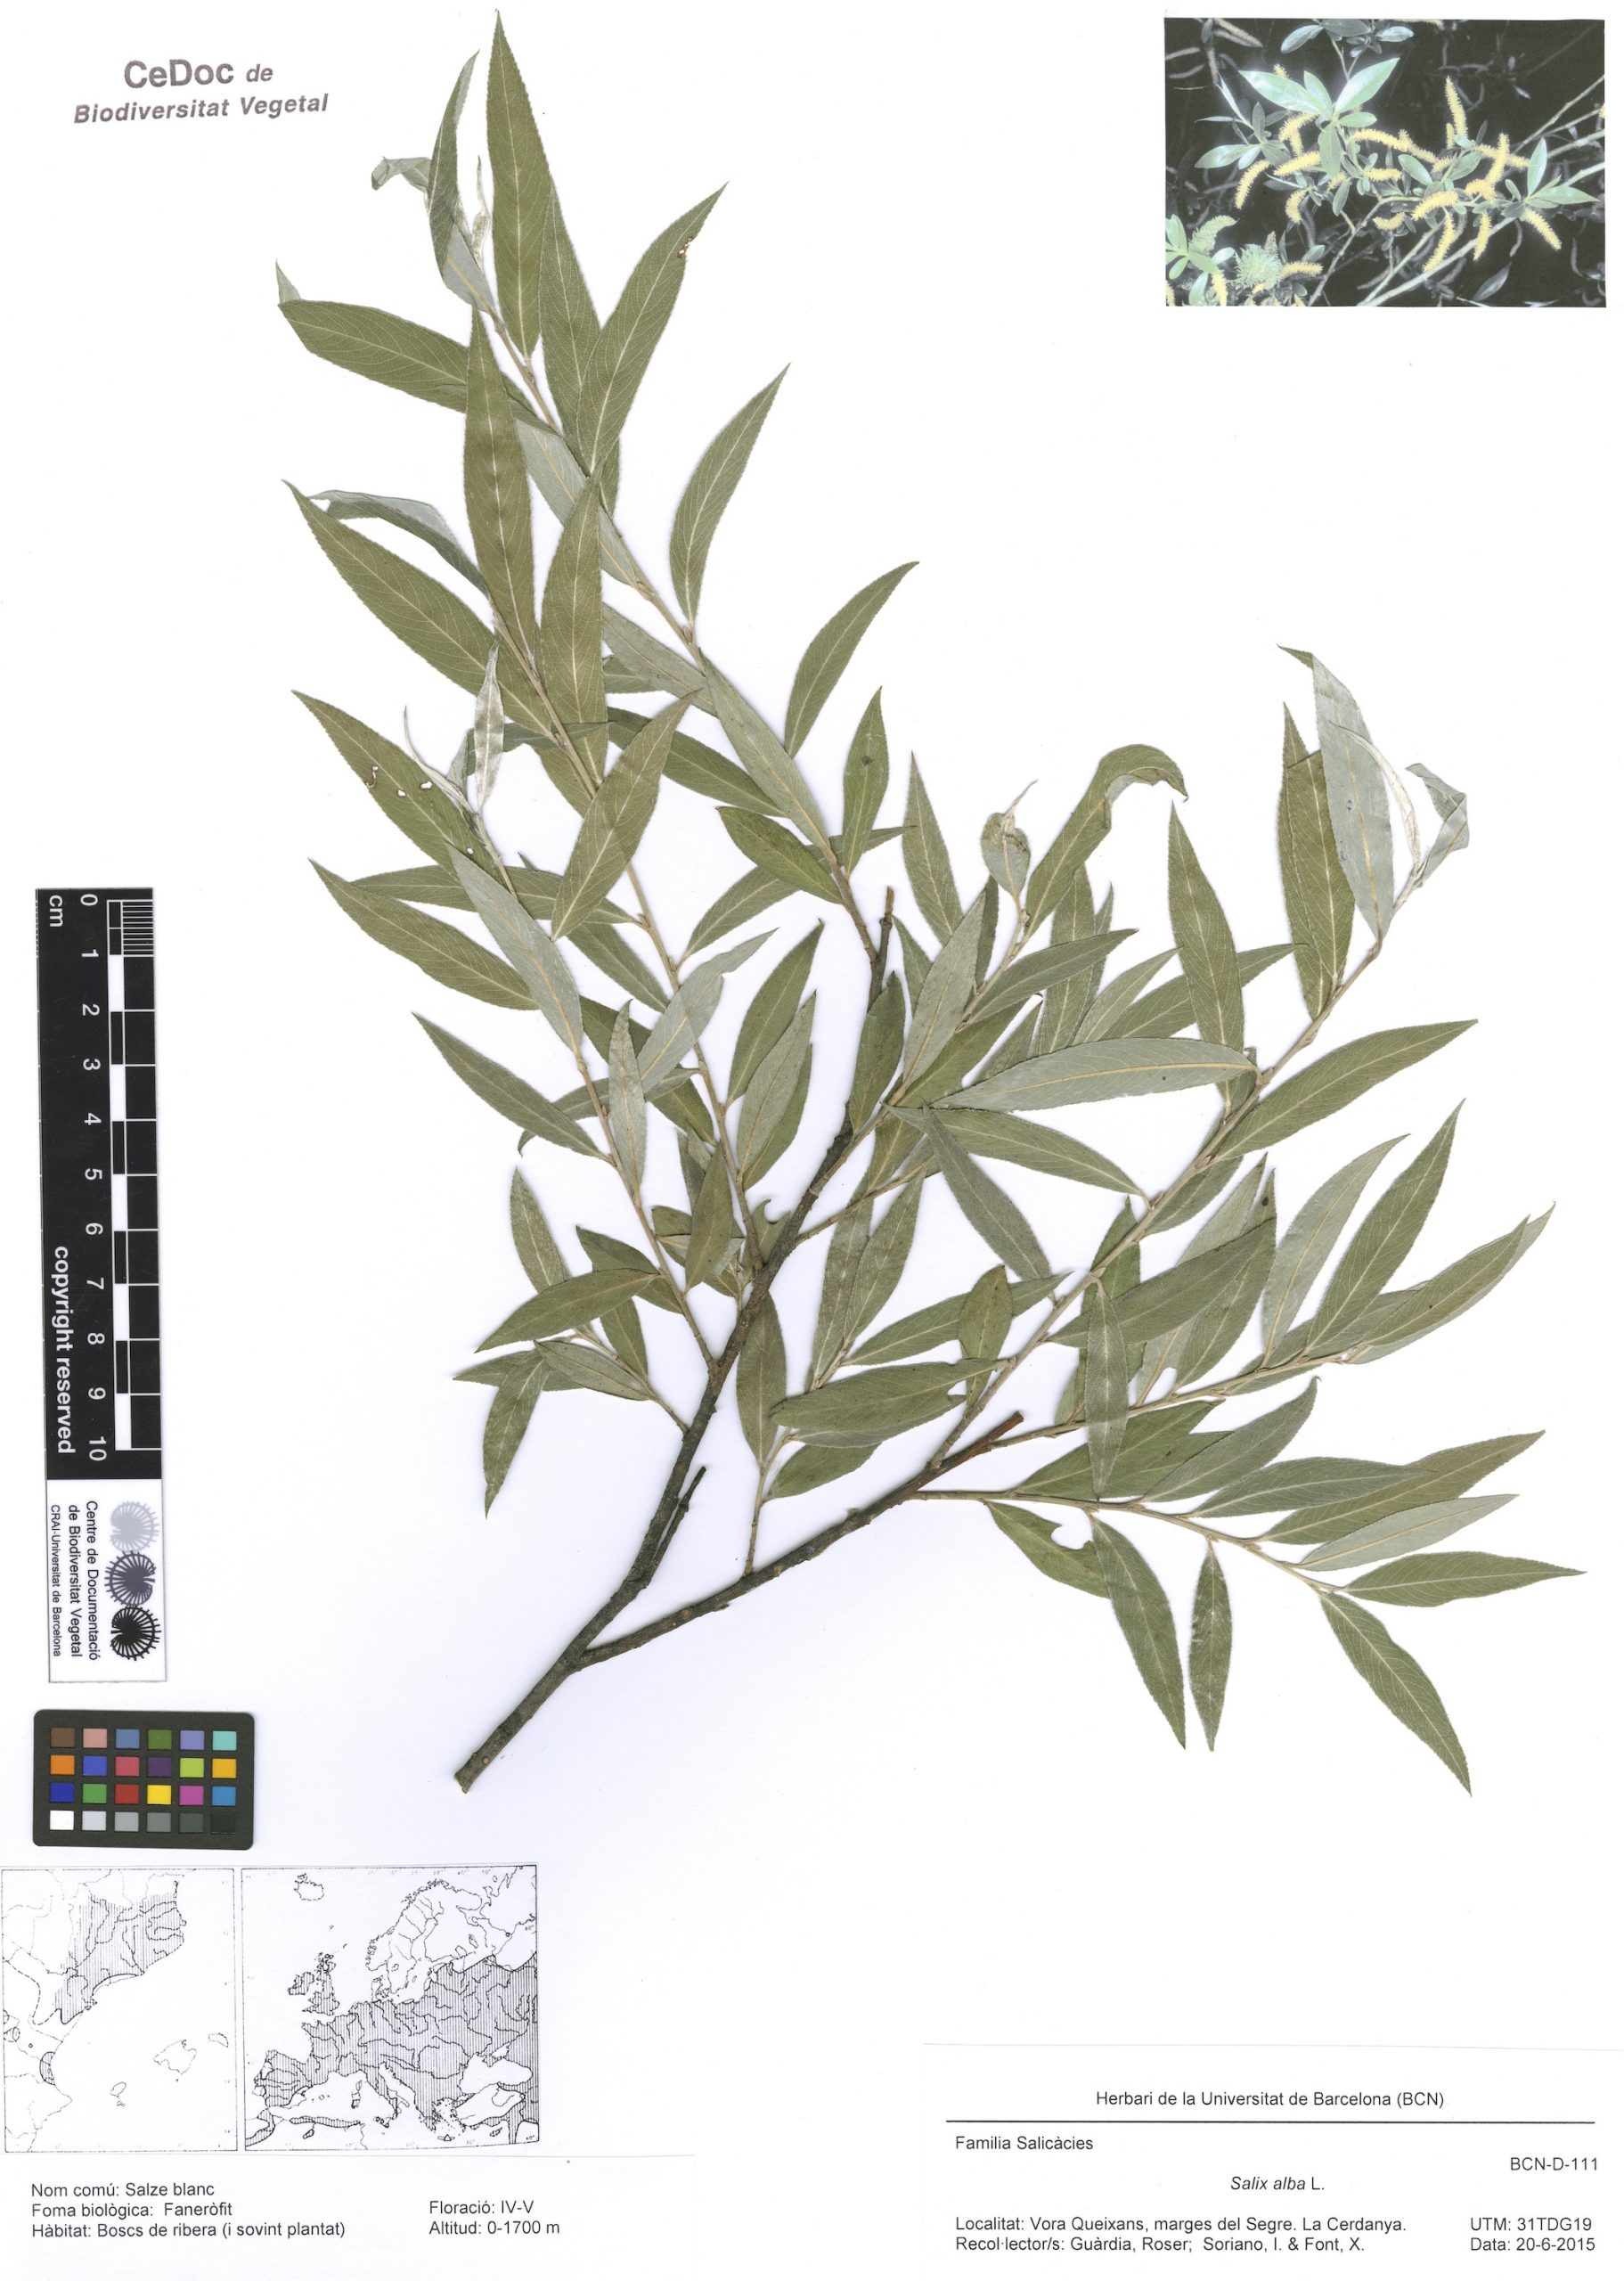 Salix alba L. (Salze blanc)